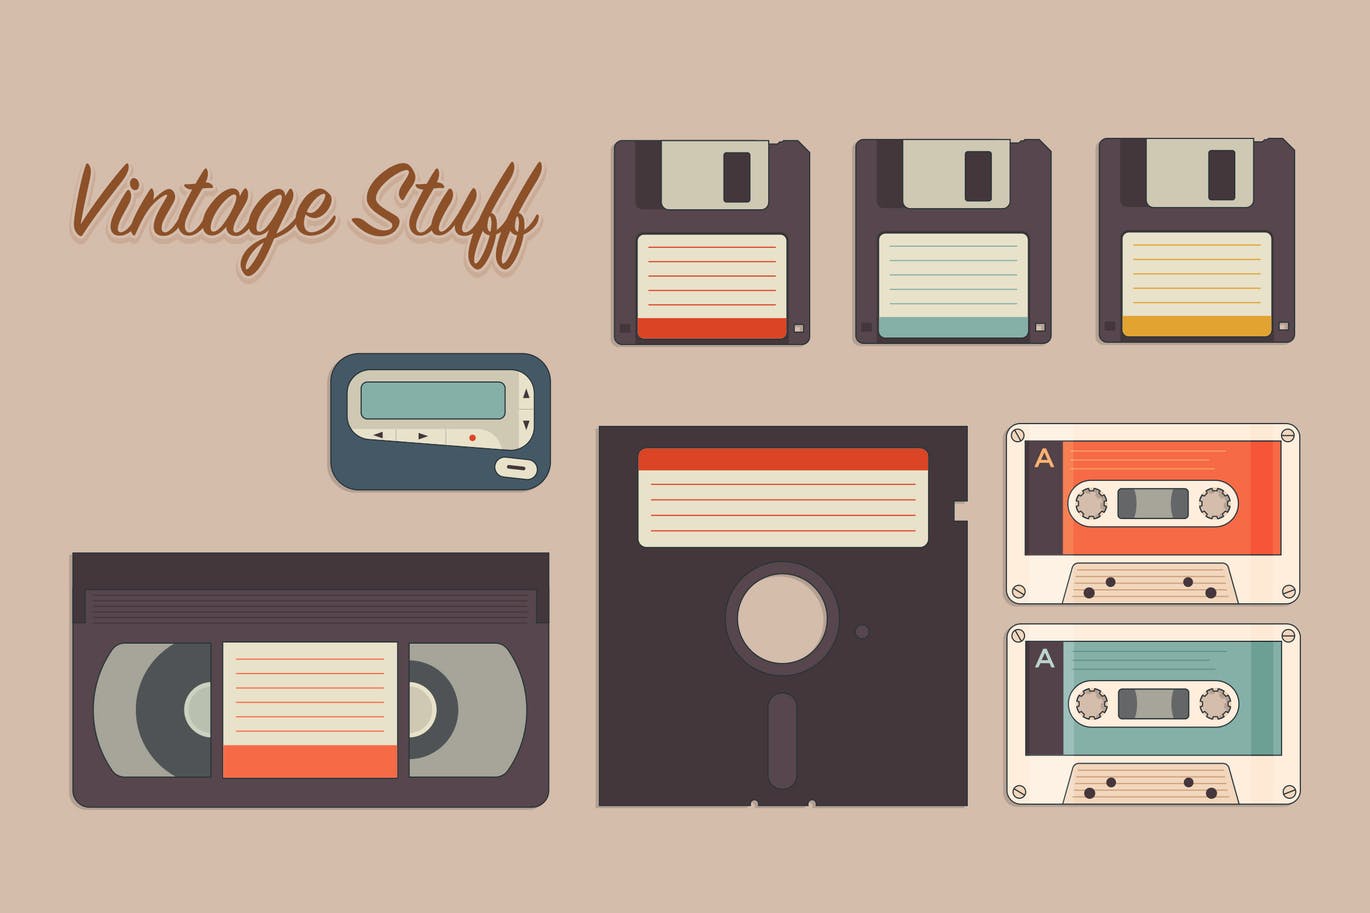 A vintage storage icon set